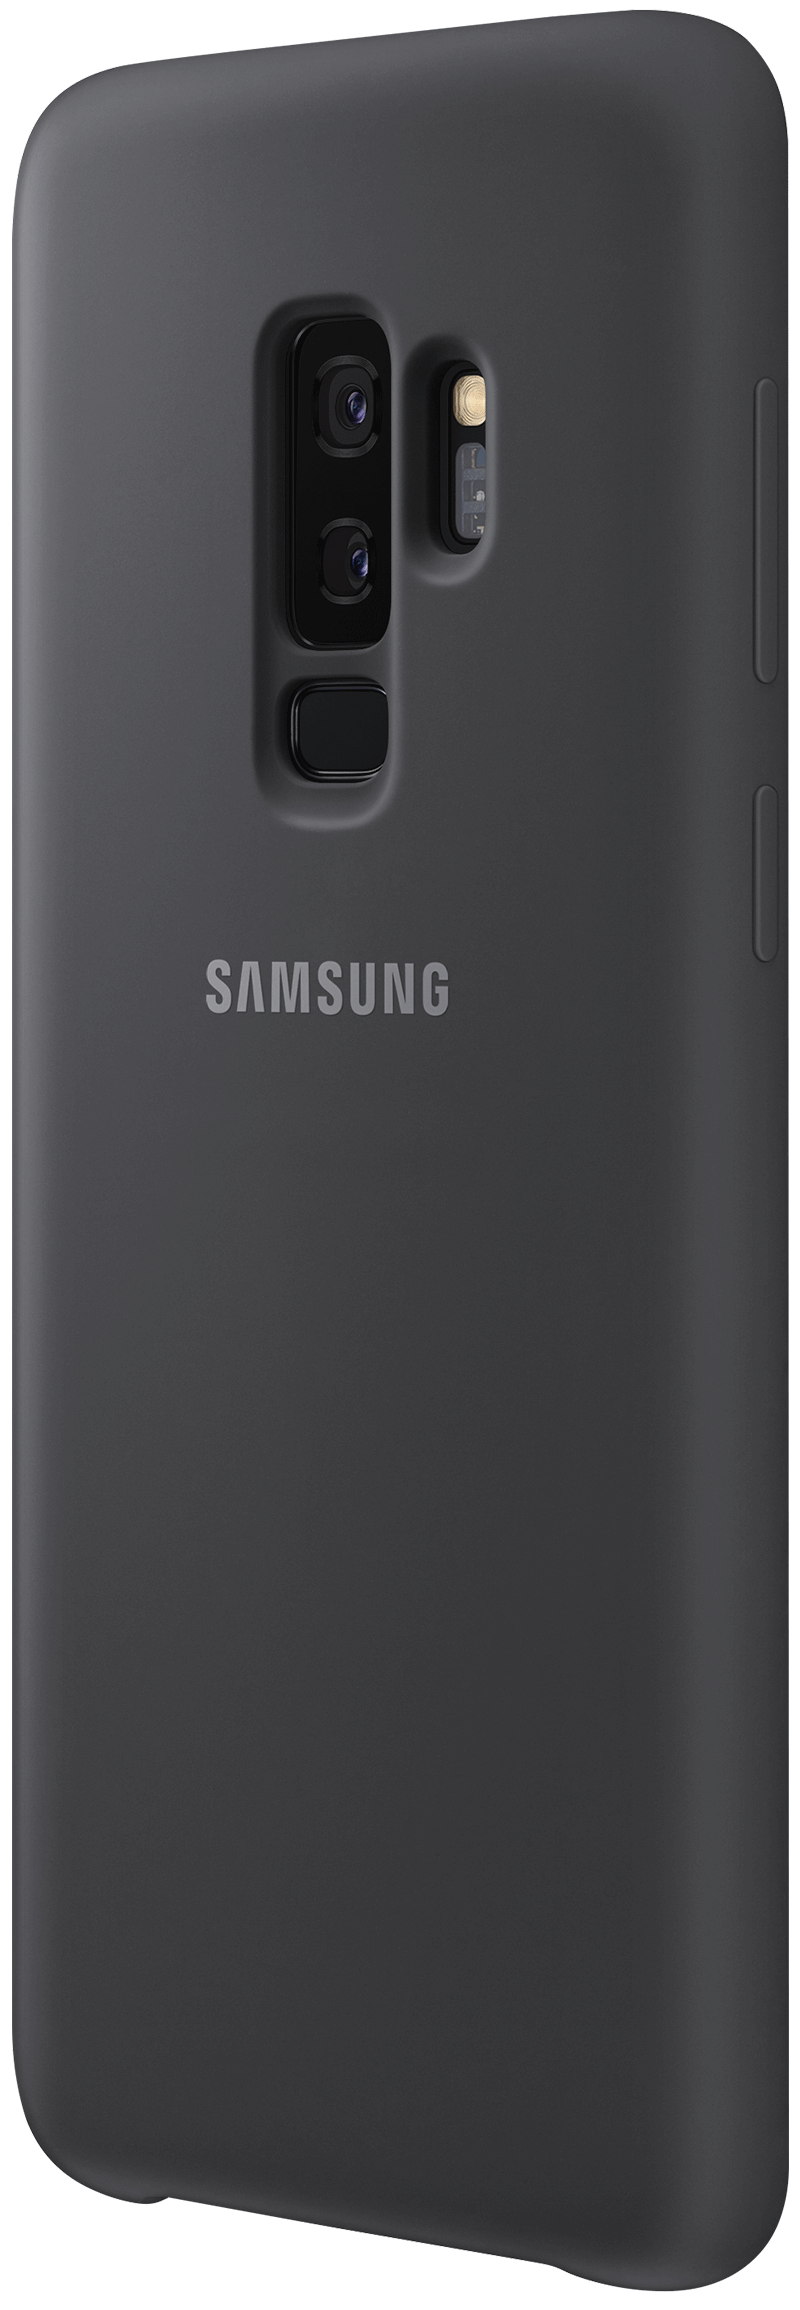 Coque Samsung silicone Galaxy S9 Plus noir